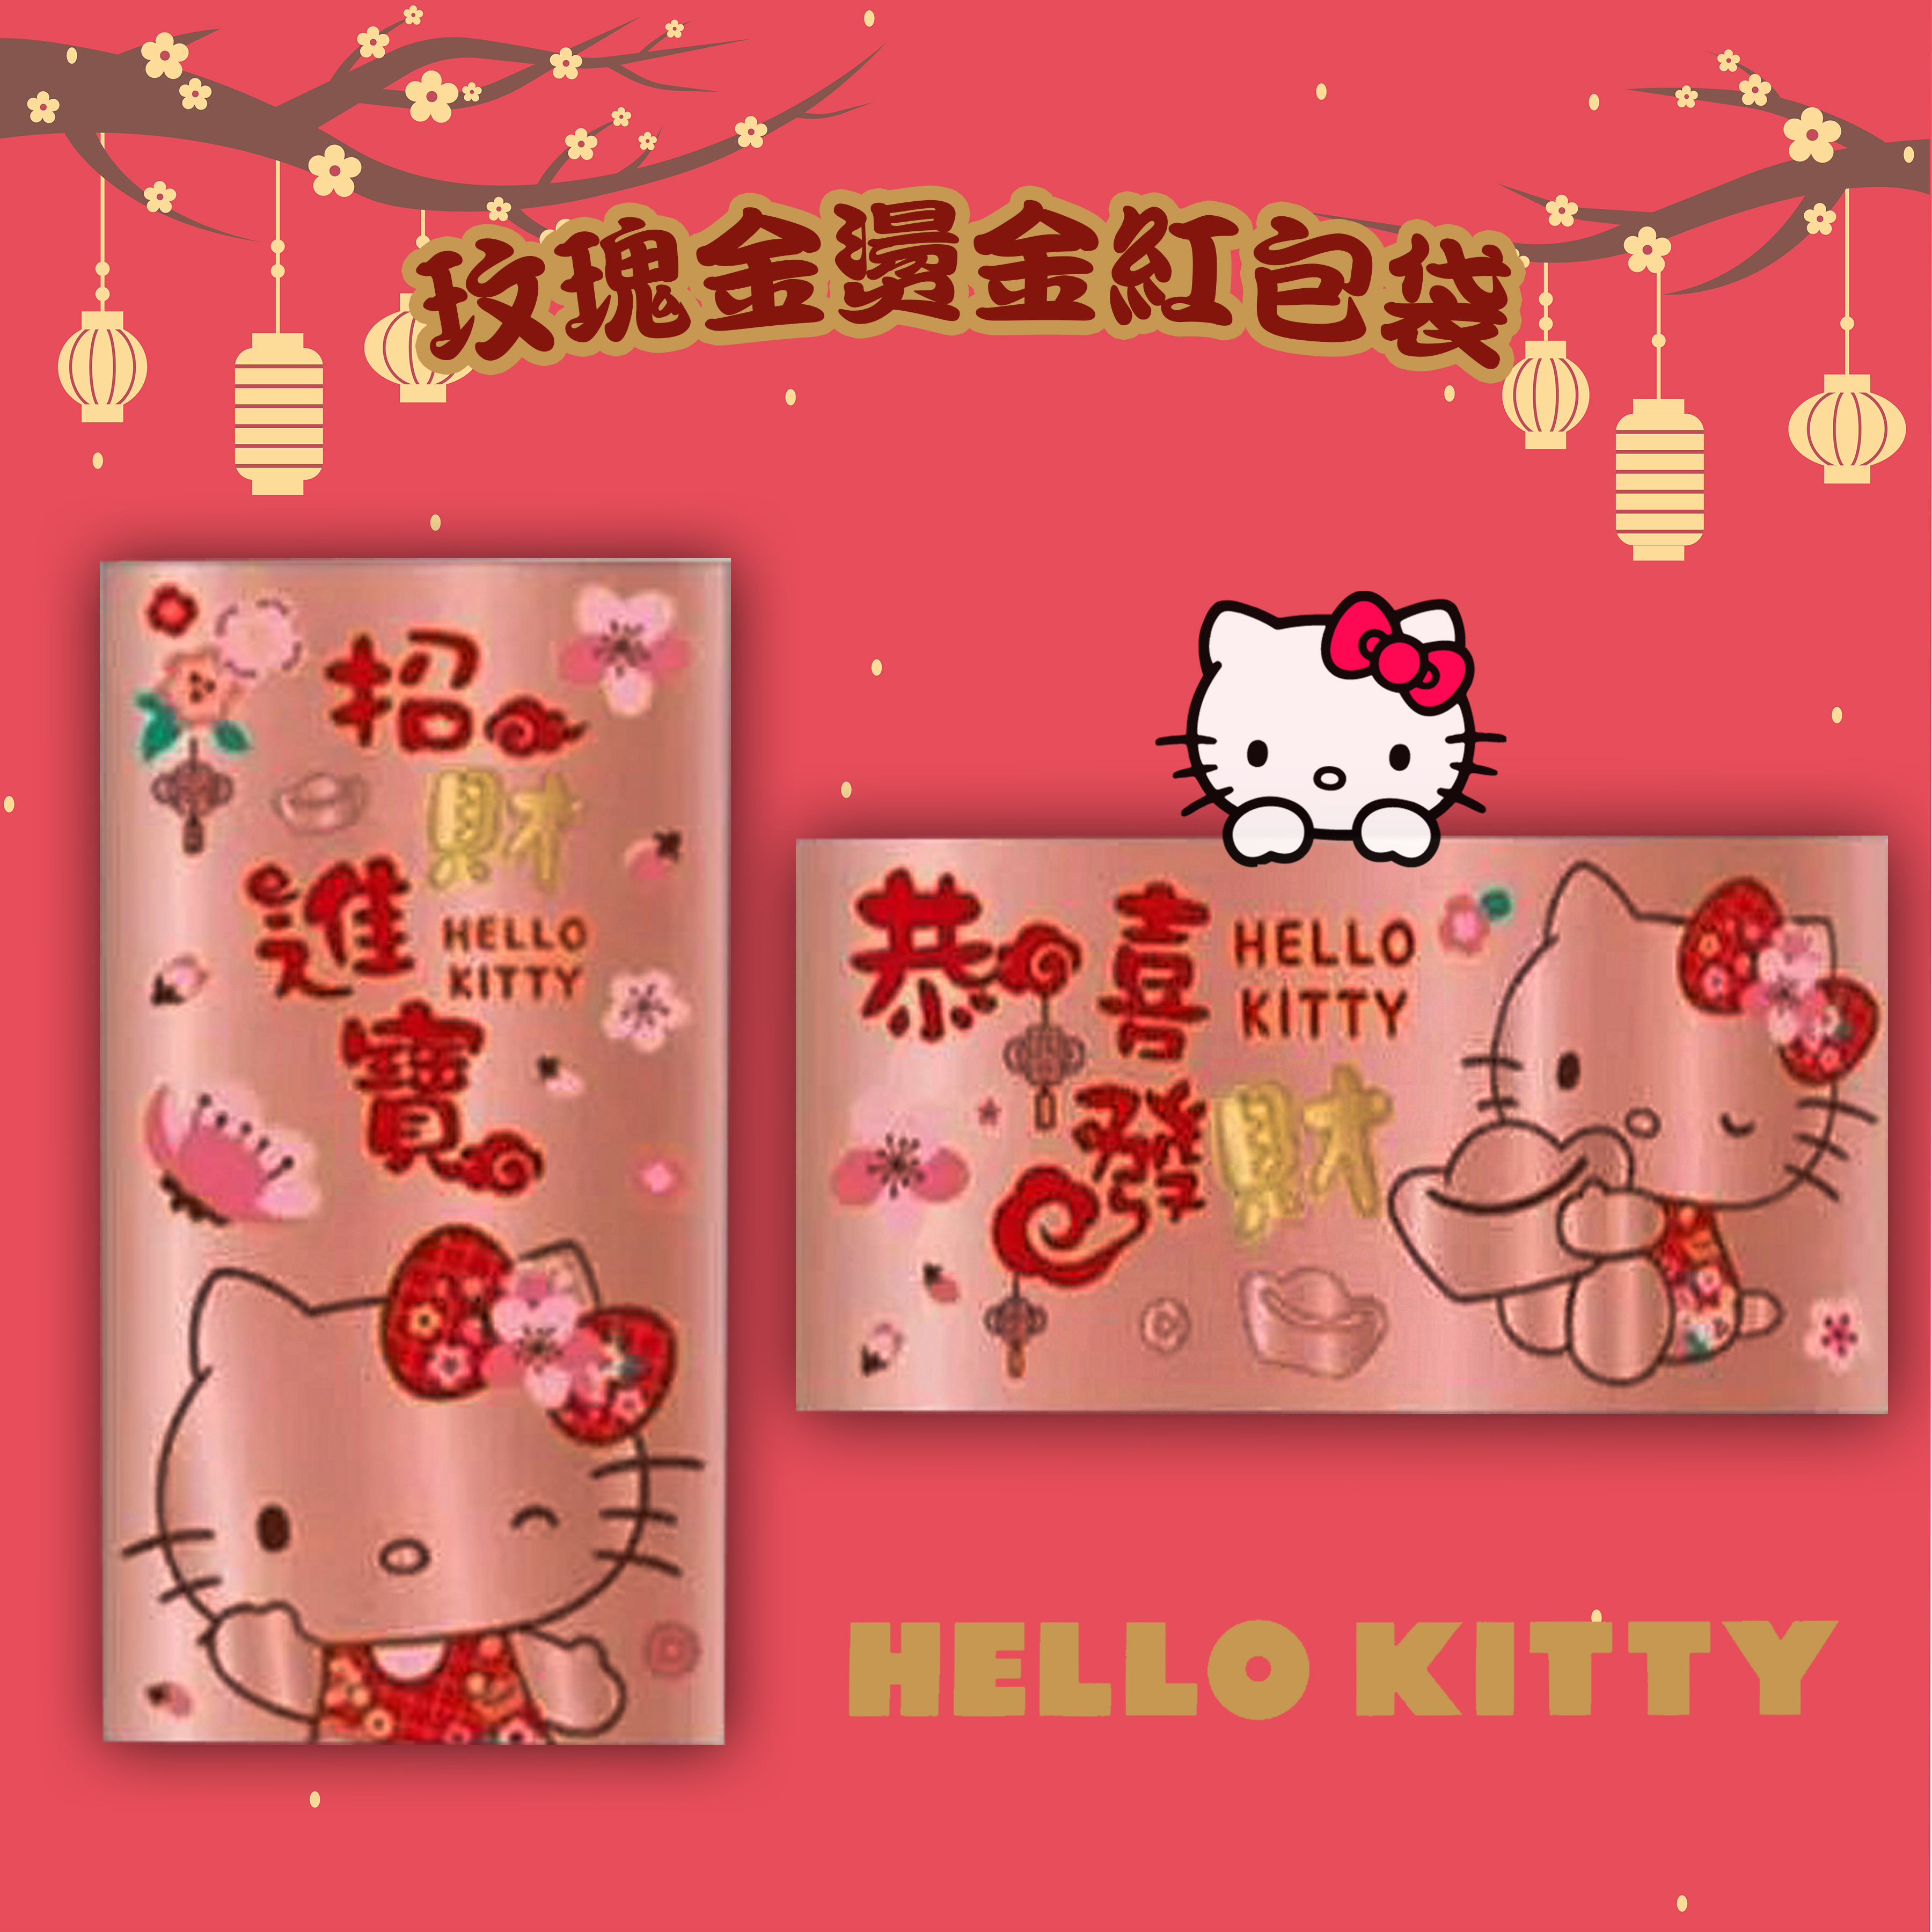 玫瑰金燙金紅包袋-HELLO KITTY 三麗鷗 Sanrio 正版授權